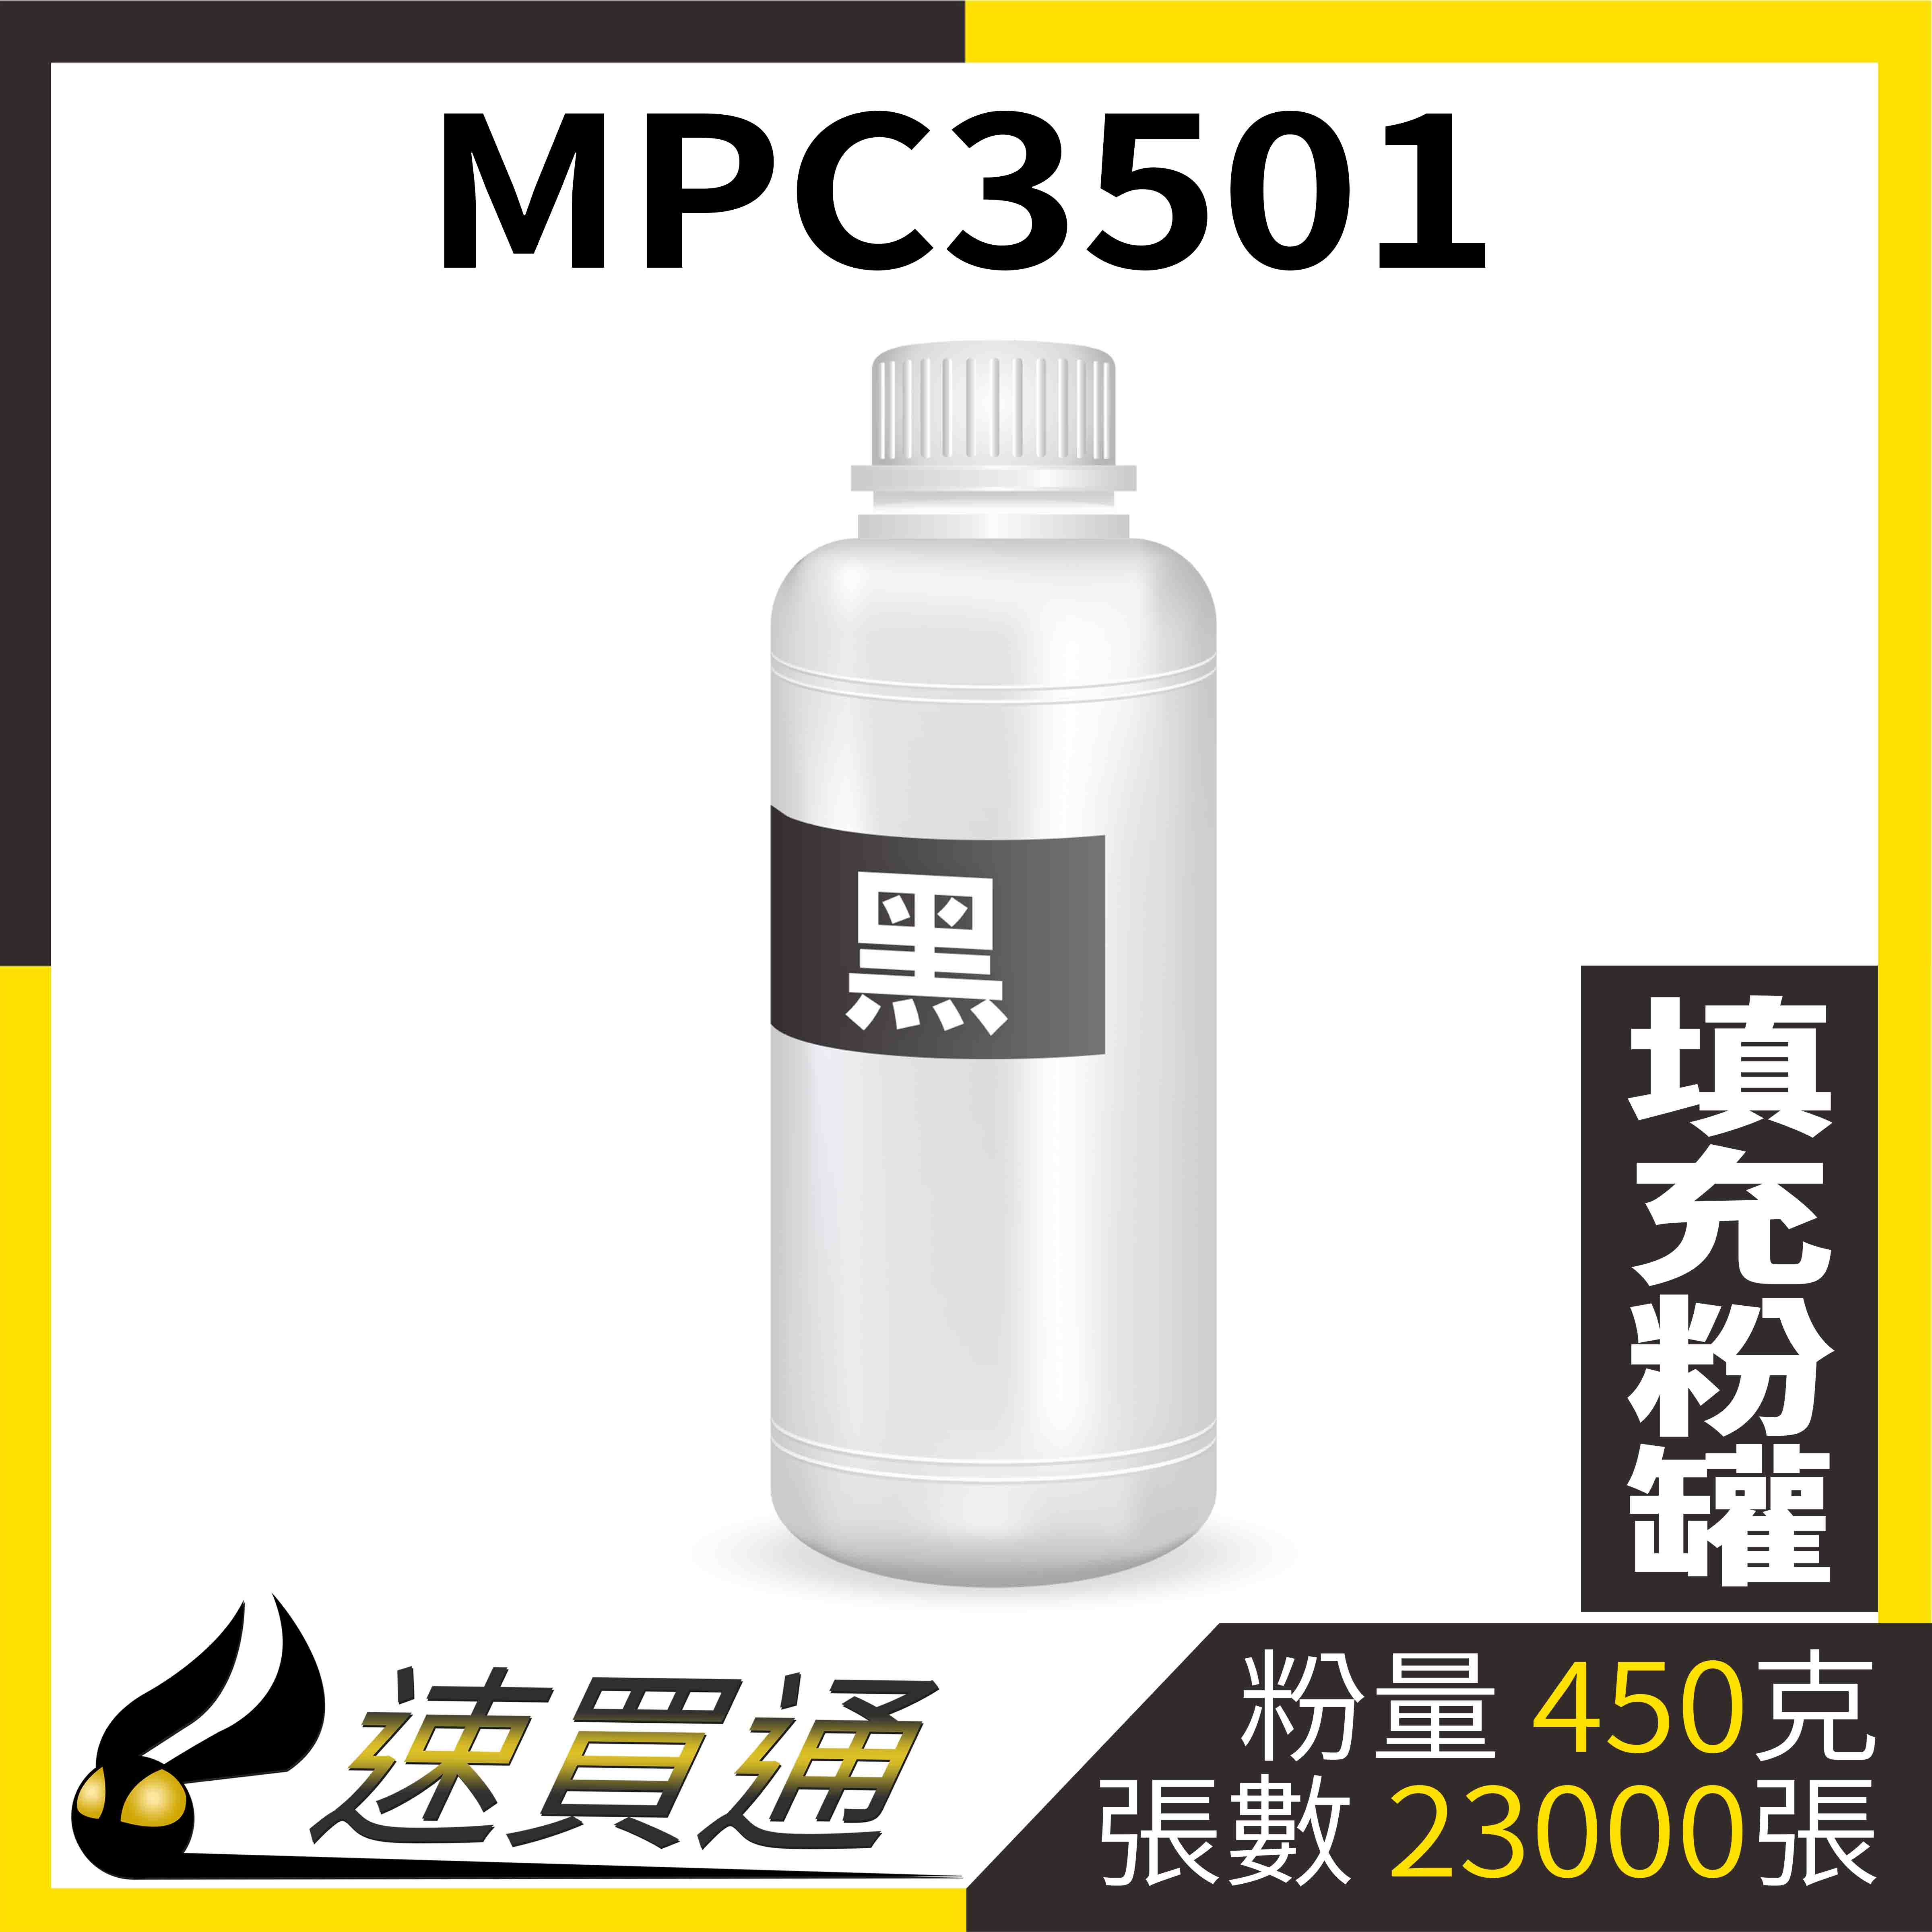 【速買通】RICOH MPC3501 黑 填充式碳粉罐